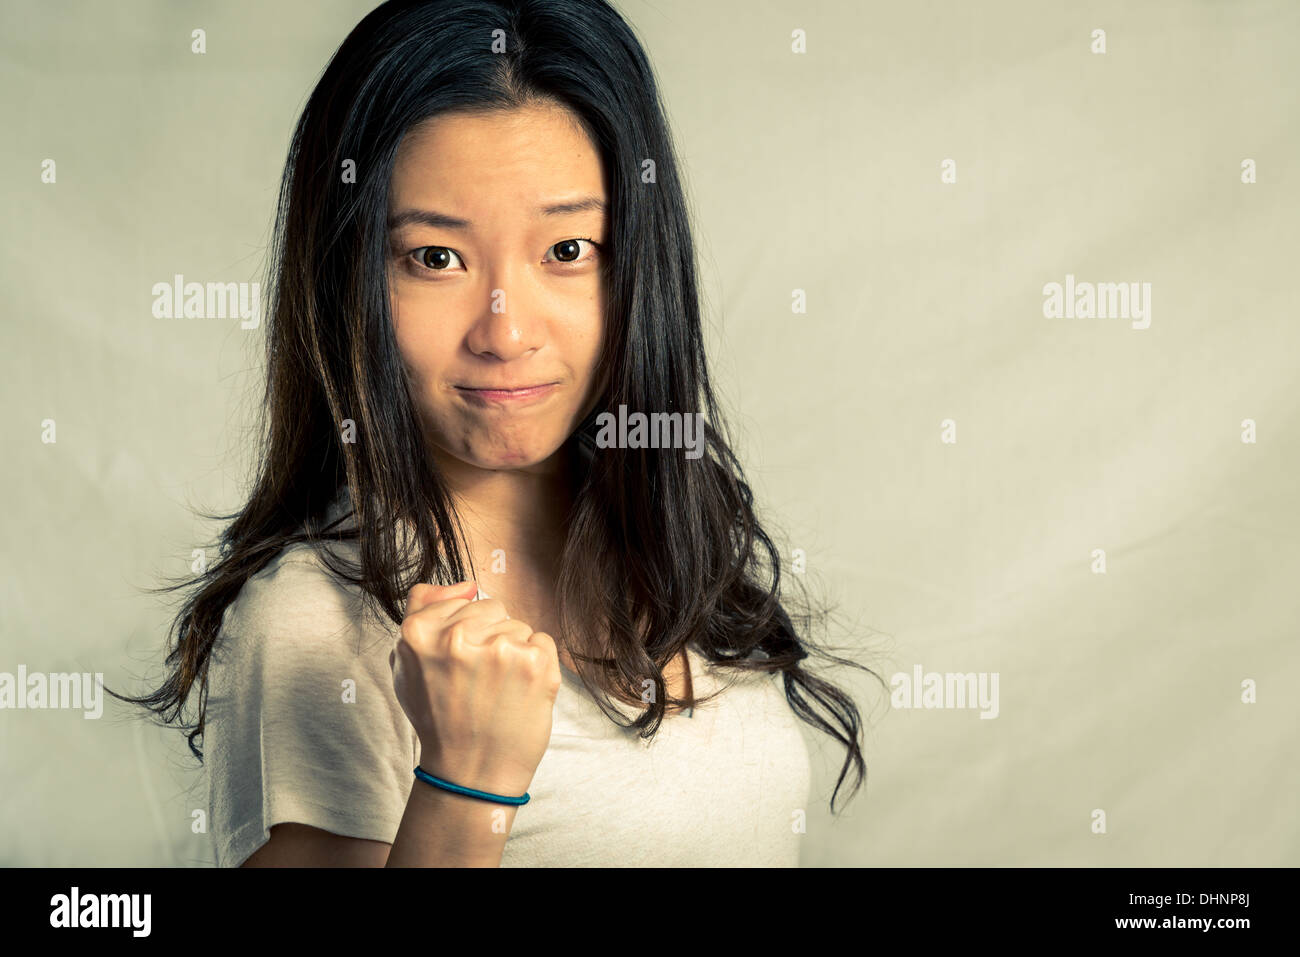 Mujer joven apretamiento su puño para el aliento, con tono de moda y antecedentes Foto de stock